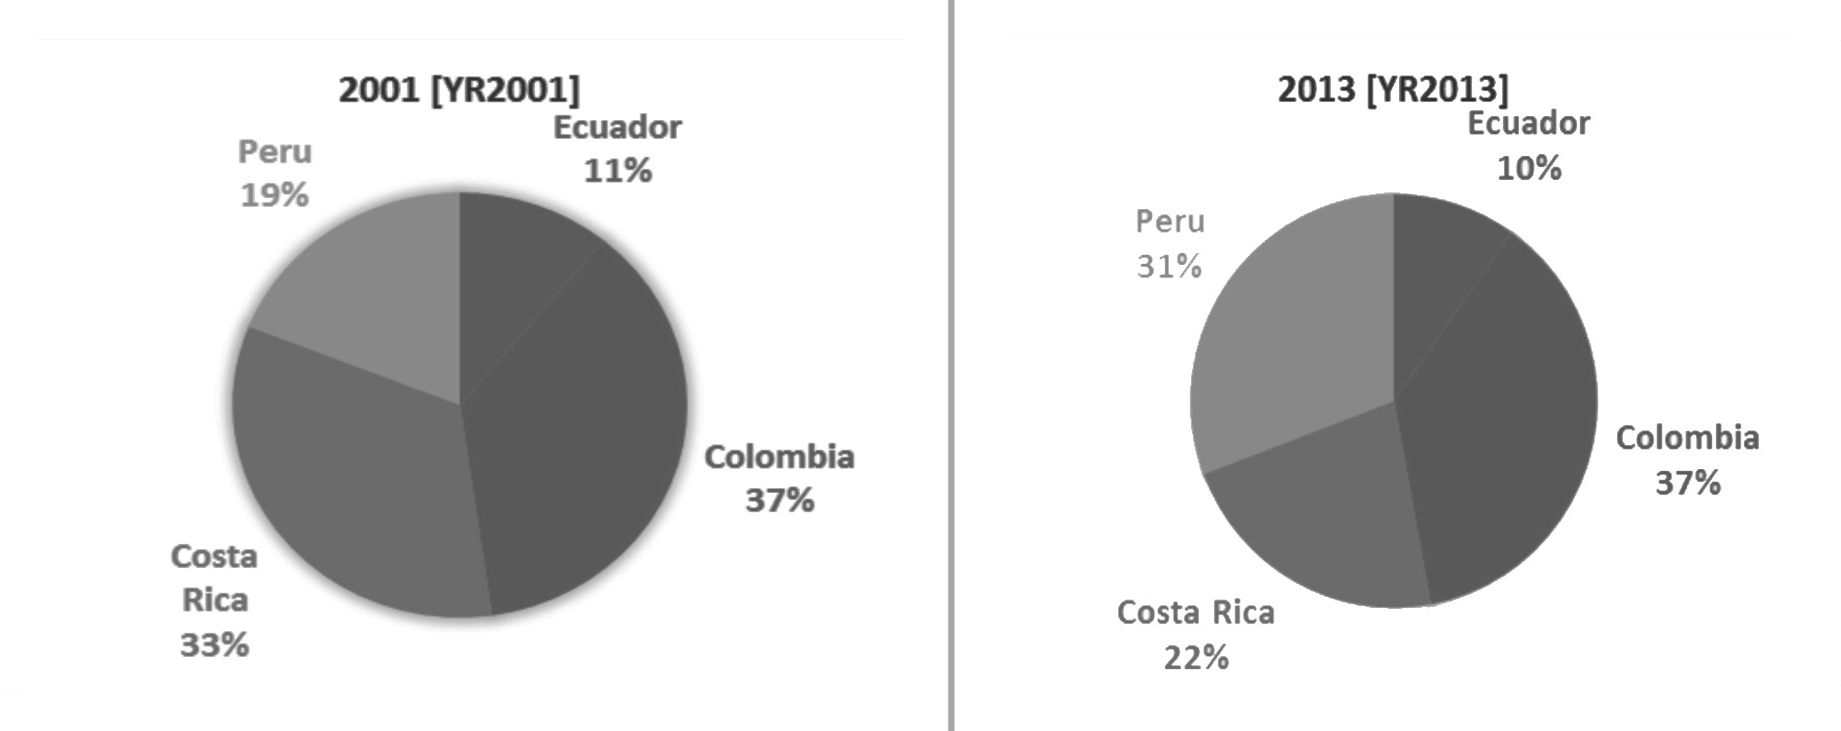 Comparación del market share de los ingresos económicos, con países competencia, del turismo en Ecuador, del 2001 y 2013
